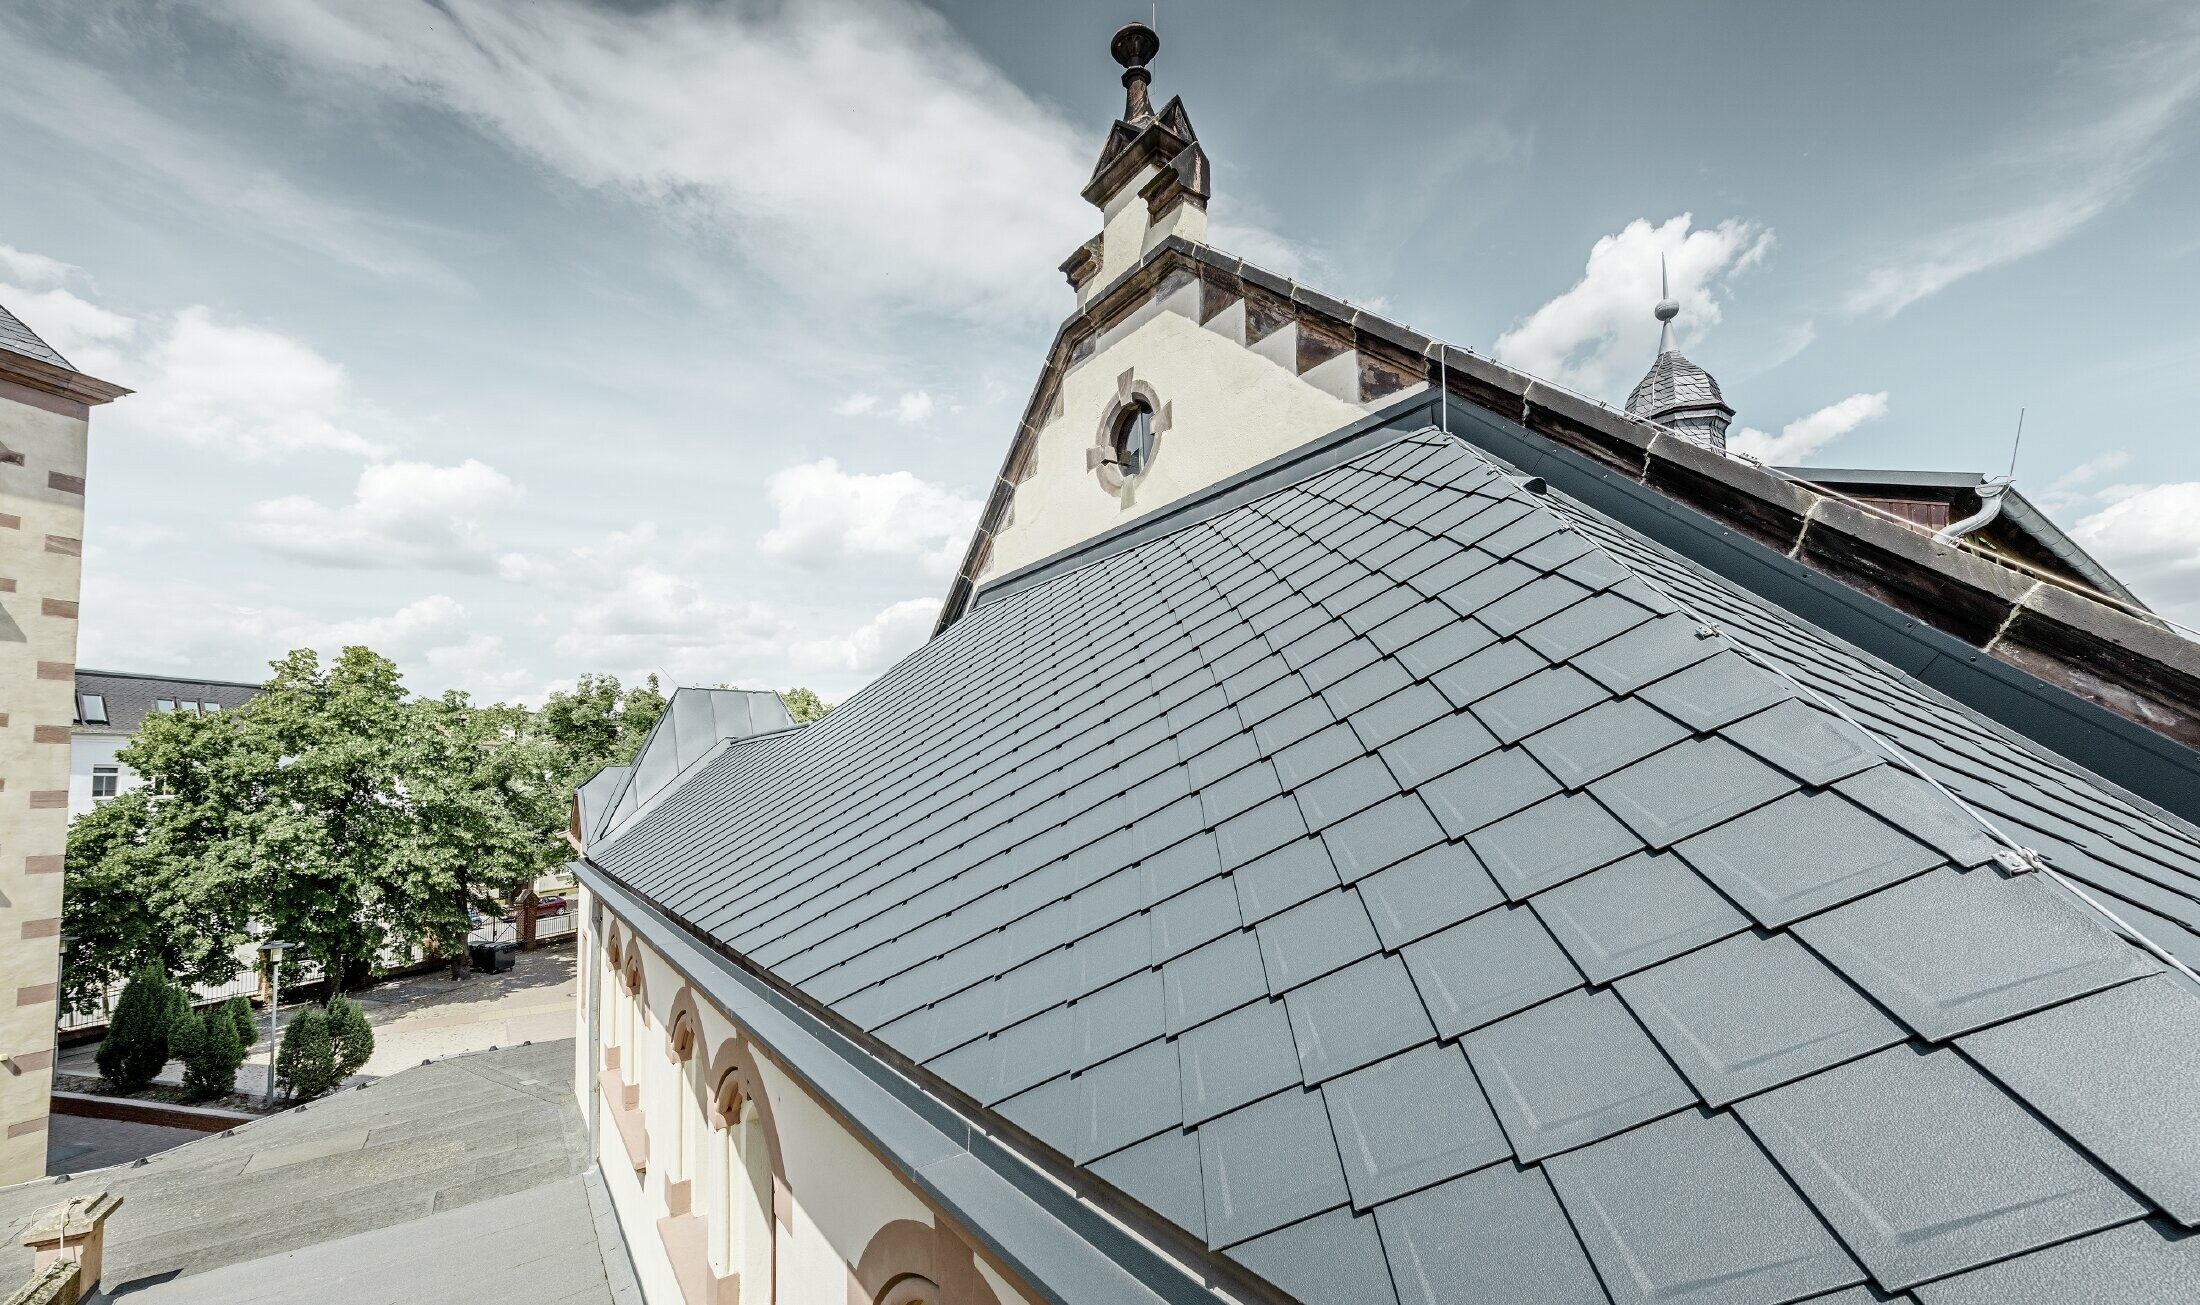 Świeżo wyremontowana hala sportowa szkoły Lutherstadt Wittenberg z aluminiowym dachem PREFA, wykonanym z dachówki romb i Prefalz w kolorze antracytu